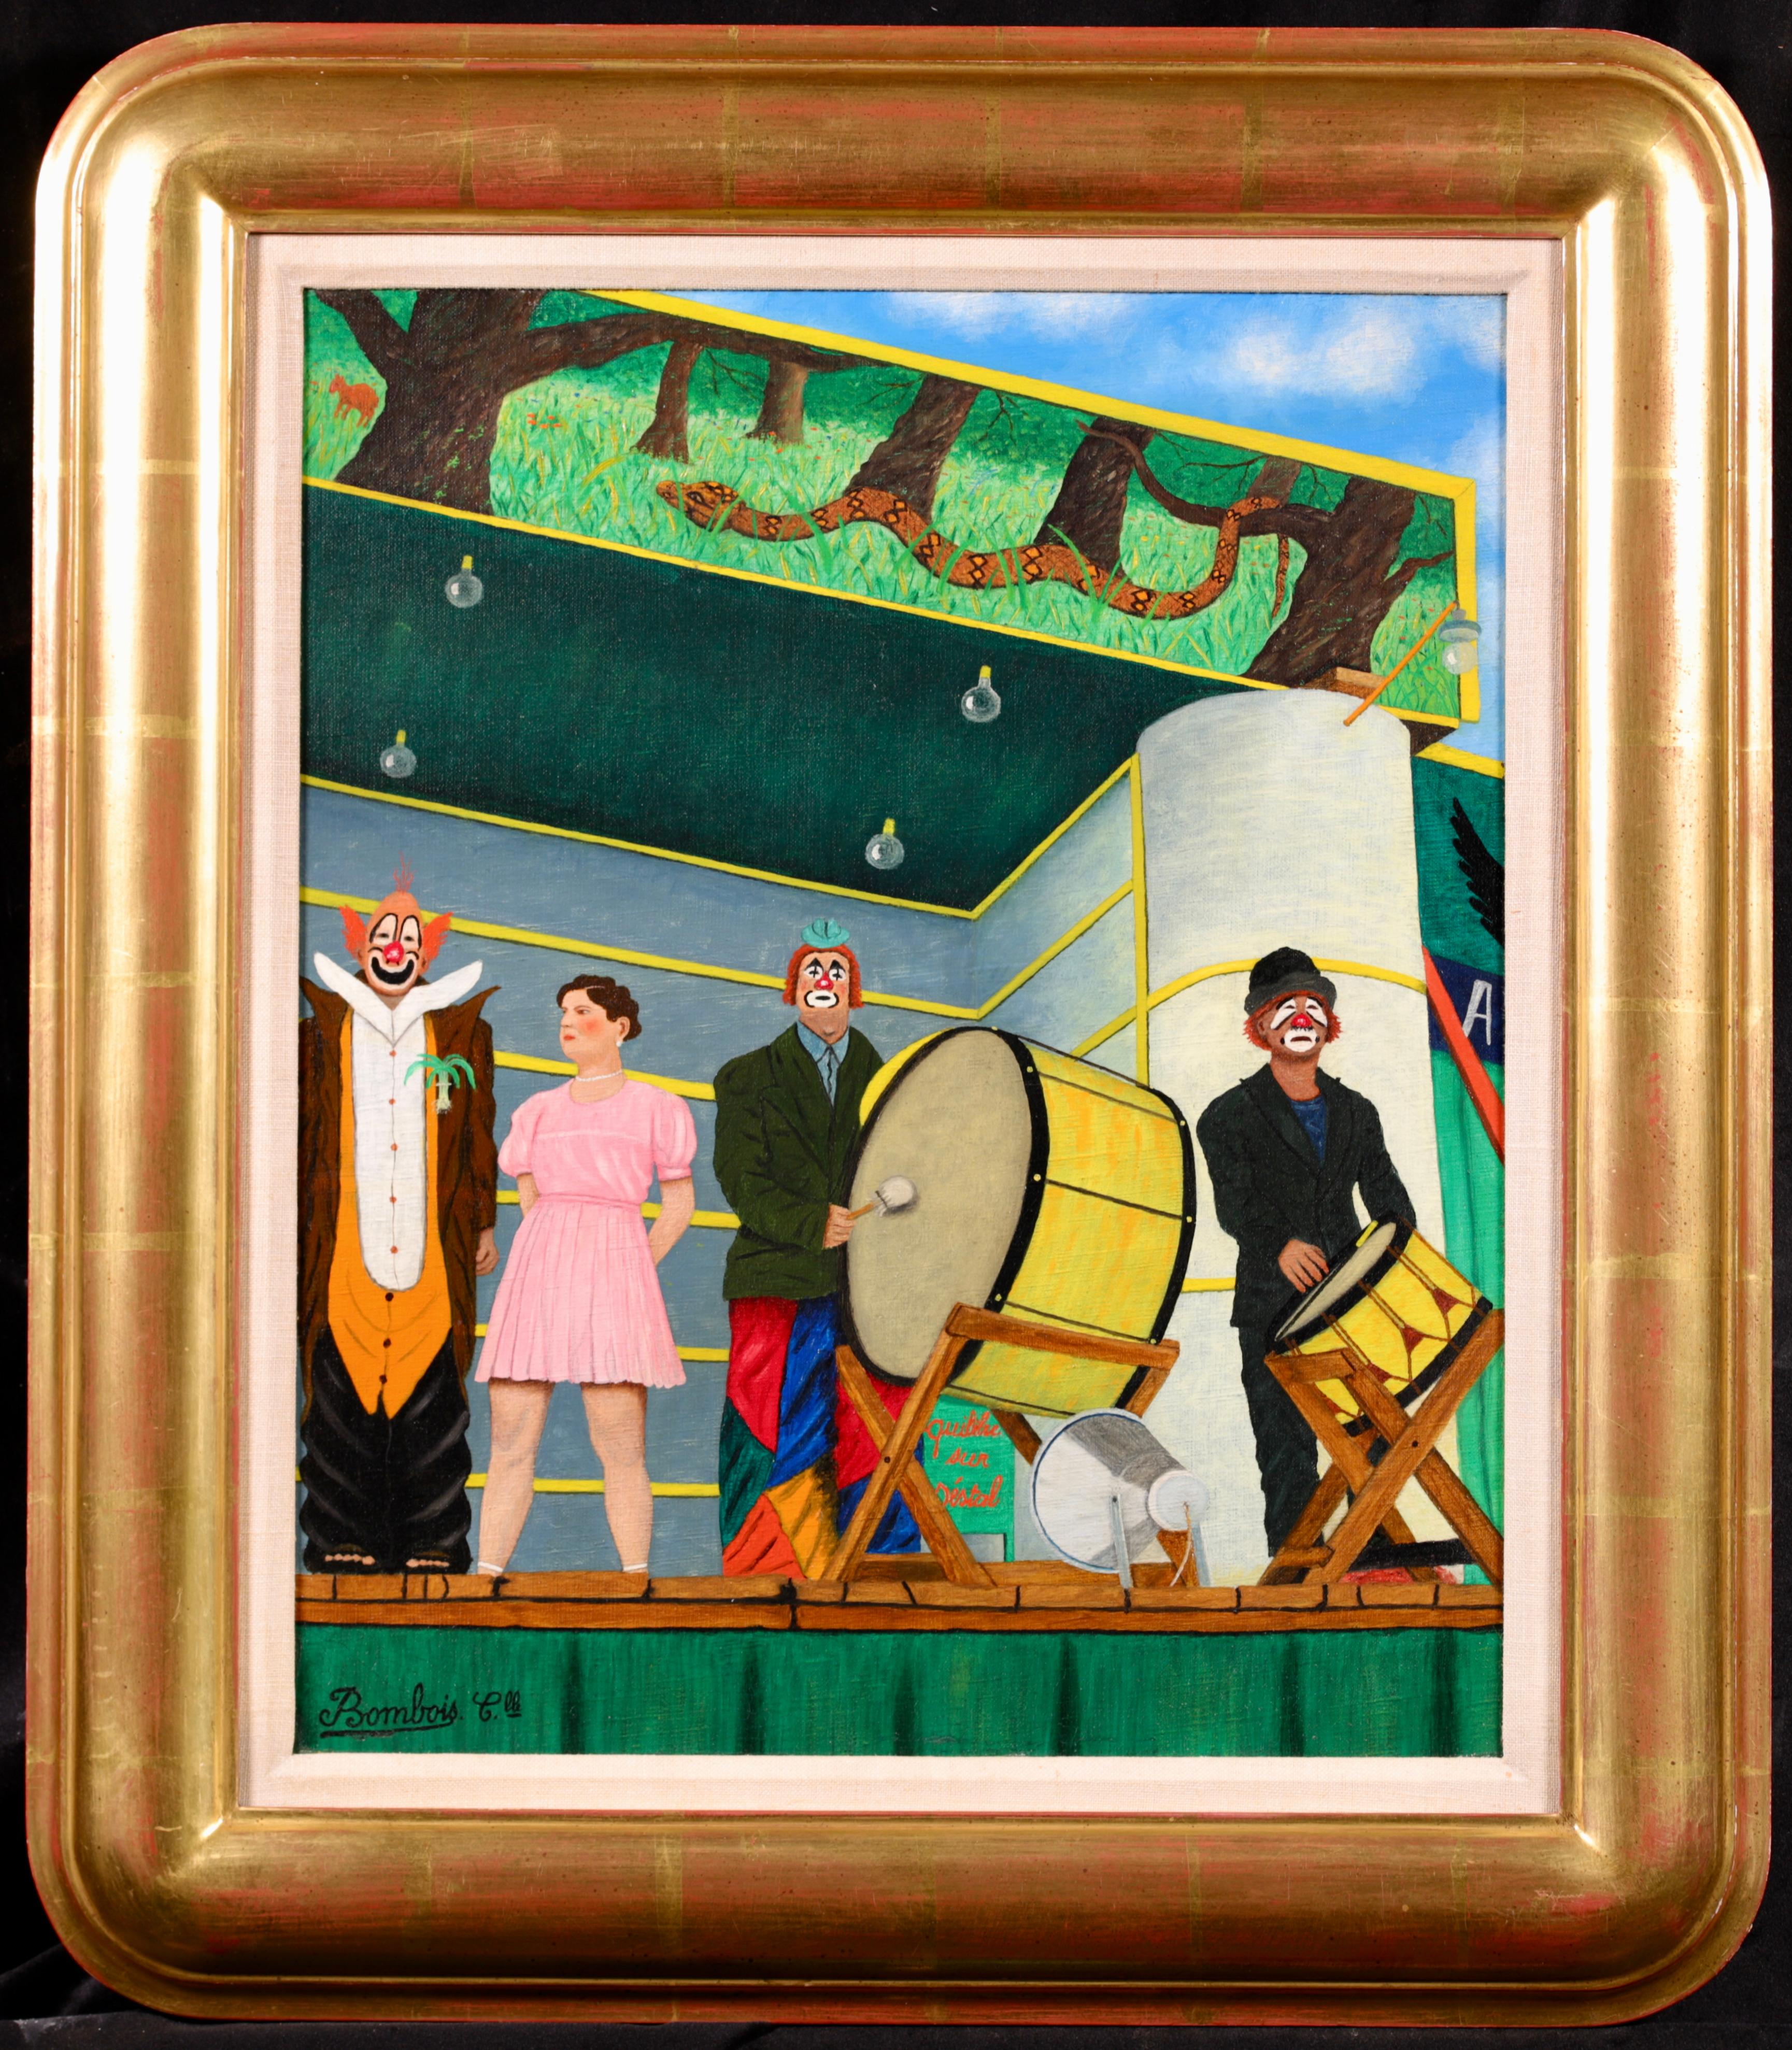 Huile figurative sur toile signée circa 1955 par le peintre naïf français Camille Bombois. Cette œuvre charmante représente des artistes de cirque - trois clowns et une femme forte en robe rose - debout sur une scène en plein air. Deux clowns tapent